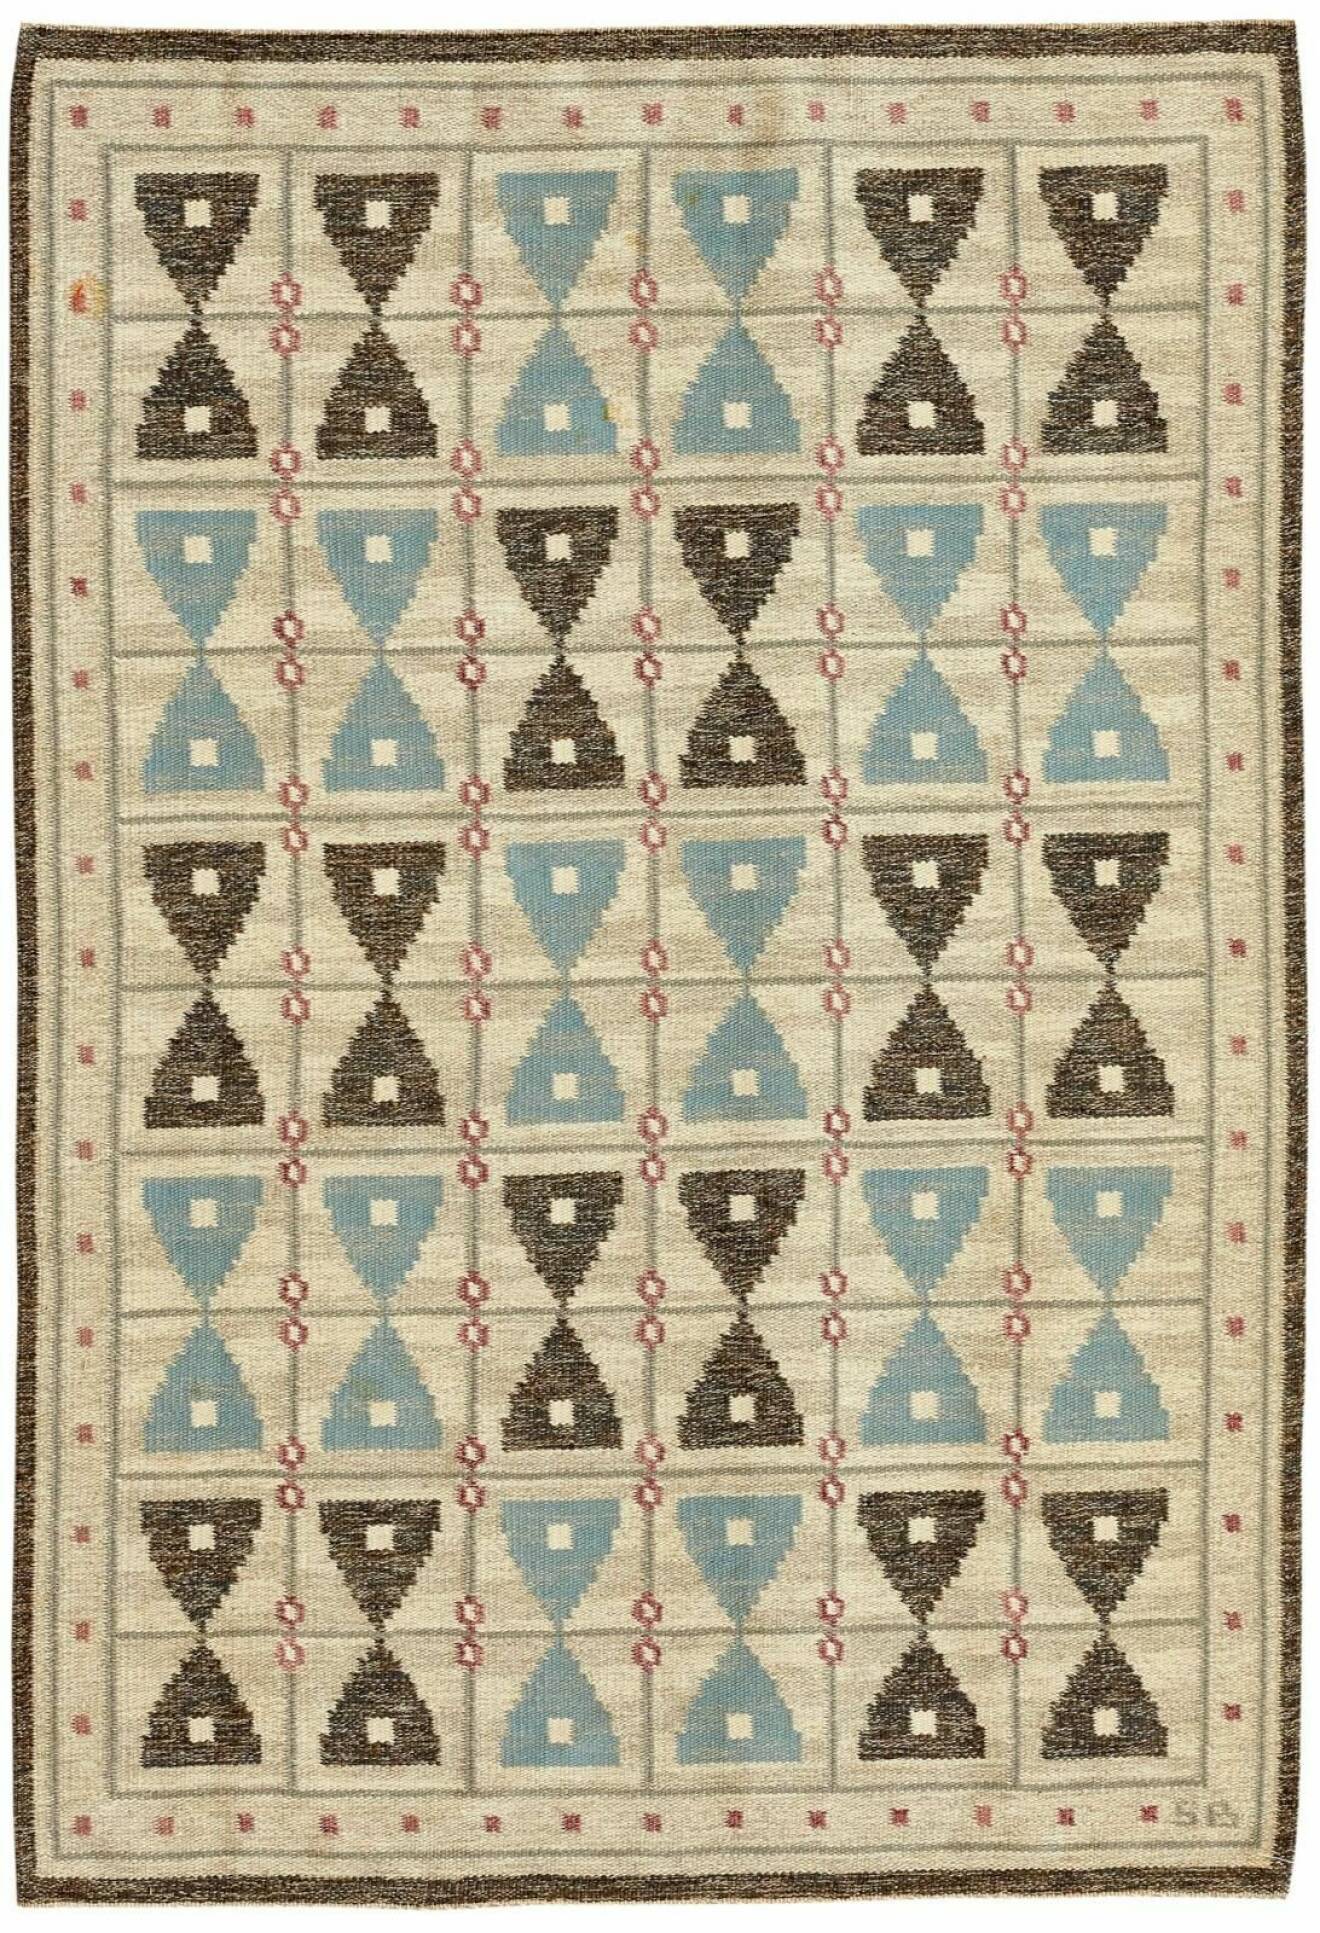 Sigvard Bernadotte komponerade en rad mattor åt matthandlaren Nils Nessim. Rölakansmattan, 234x163cm, har en stiliserad dekor av timglas. Såld för 7000kr på Stockholms Auktionsverk.